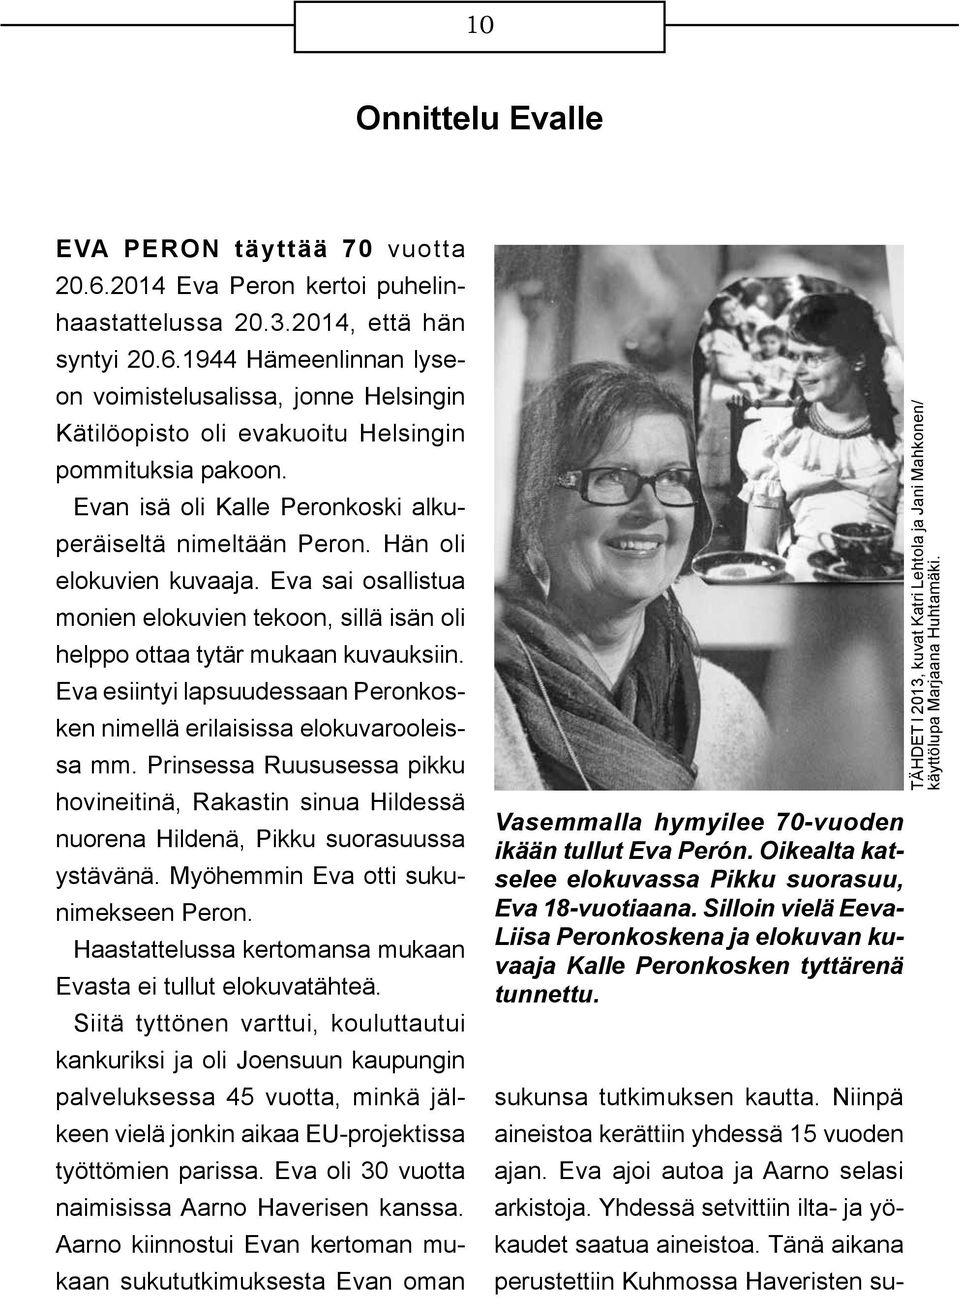 Eva esiintyi lapsuudessaan Peronkosken nimellä erilaisissa elokuvarooleissa mm. Prinsessa Ruususessa pikku hovineitinä, Rakastin sinua Hildessä nuorena Hildenä, Pikku suorasuussa ystävänä.